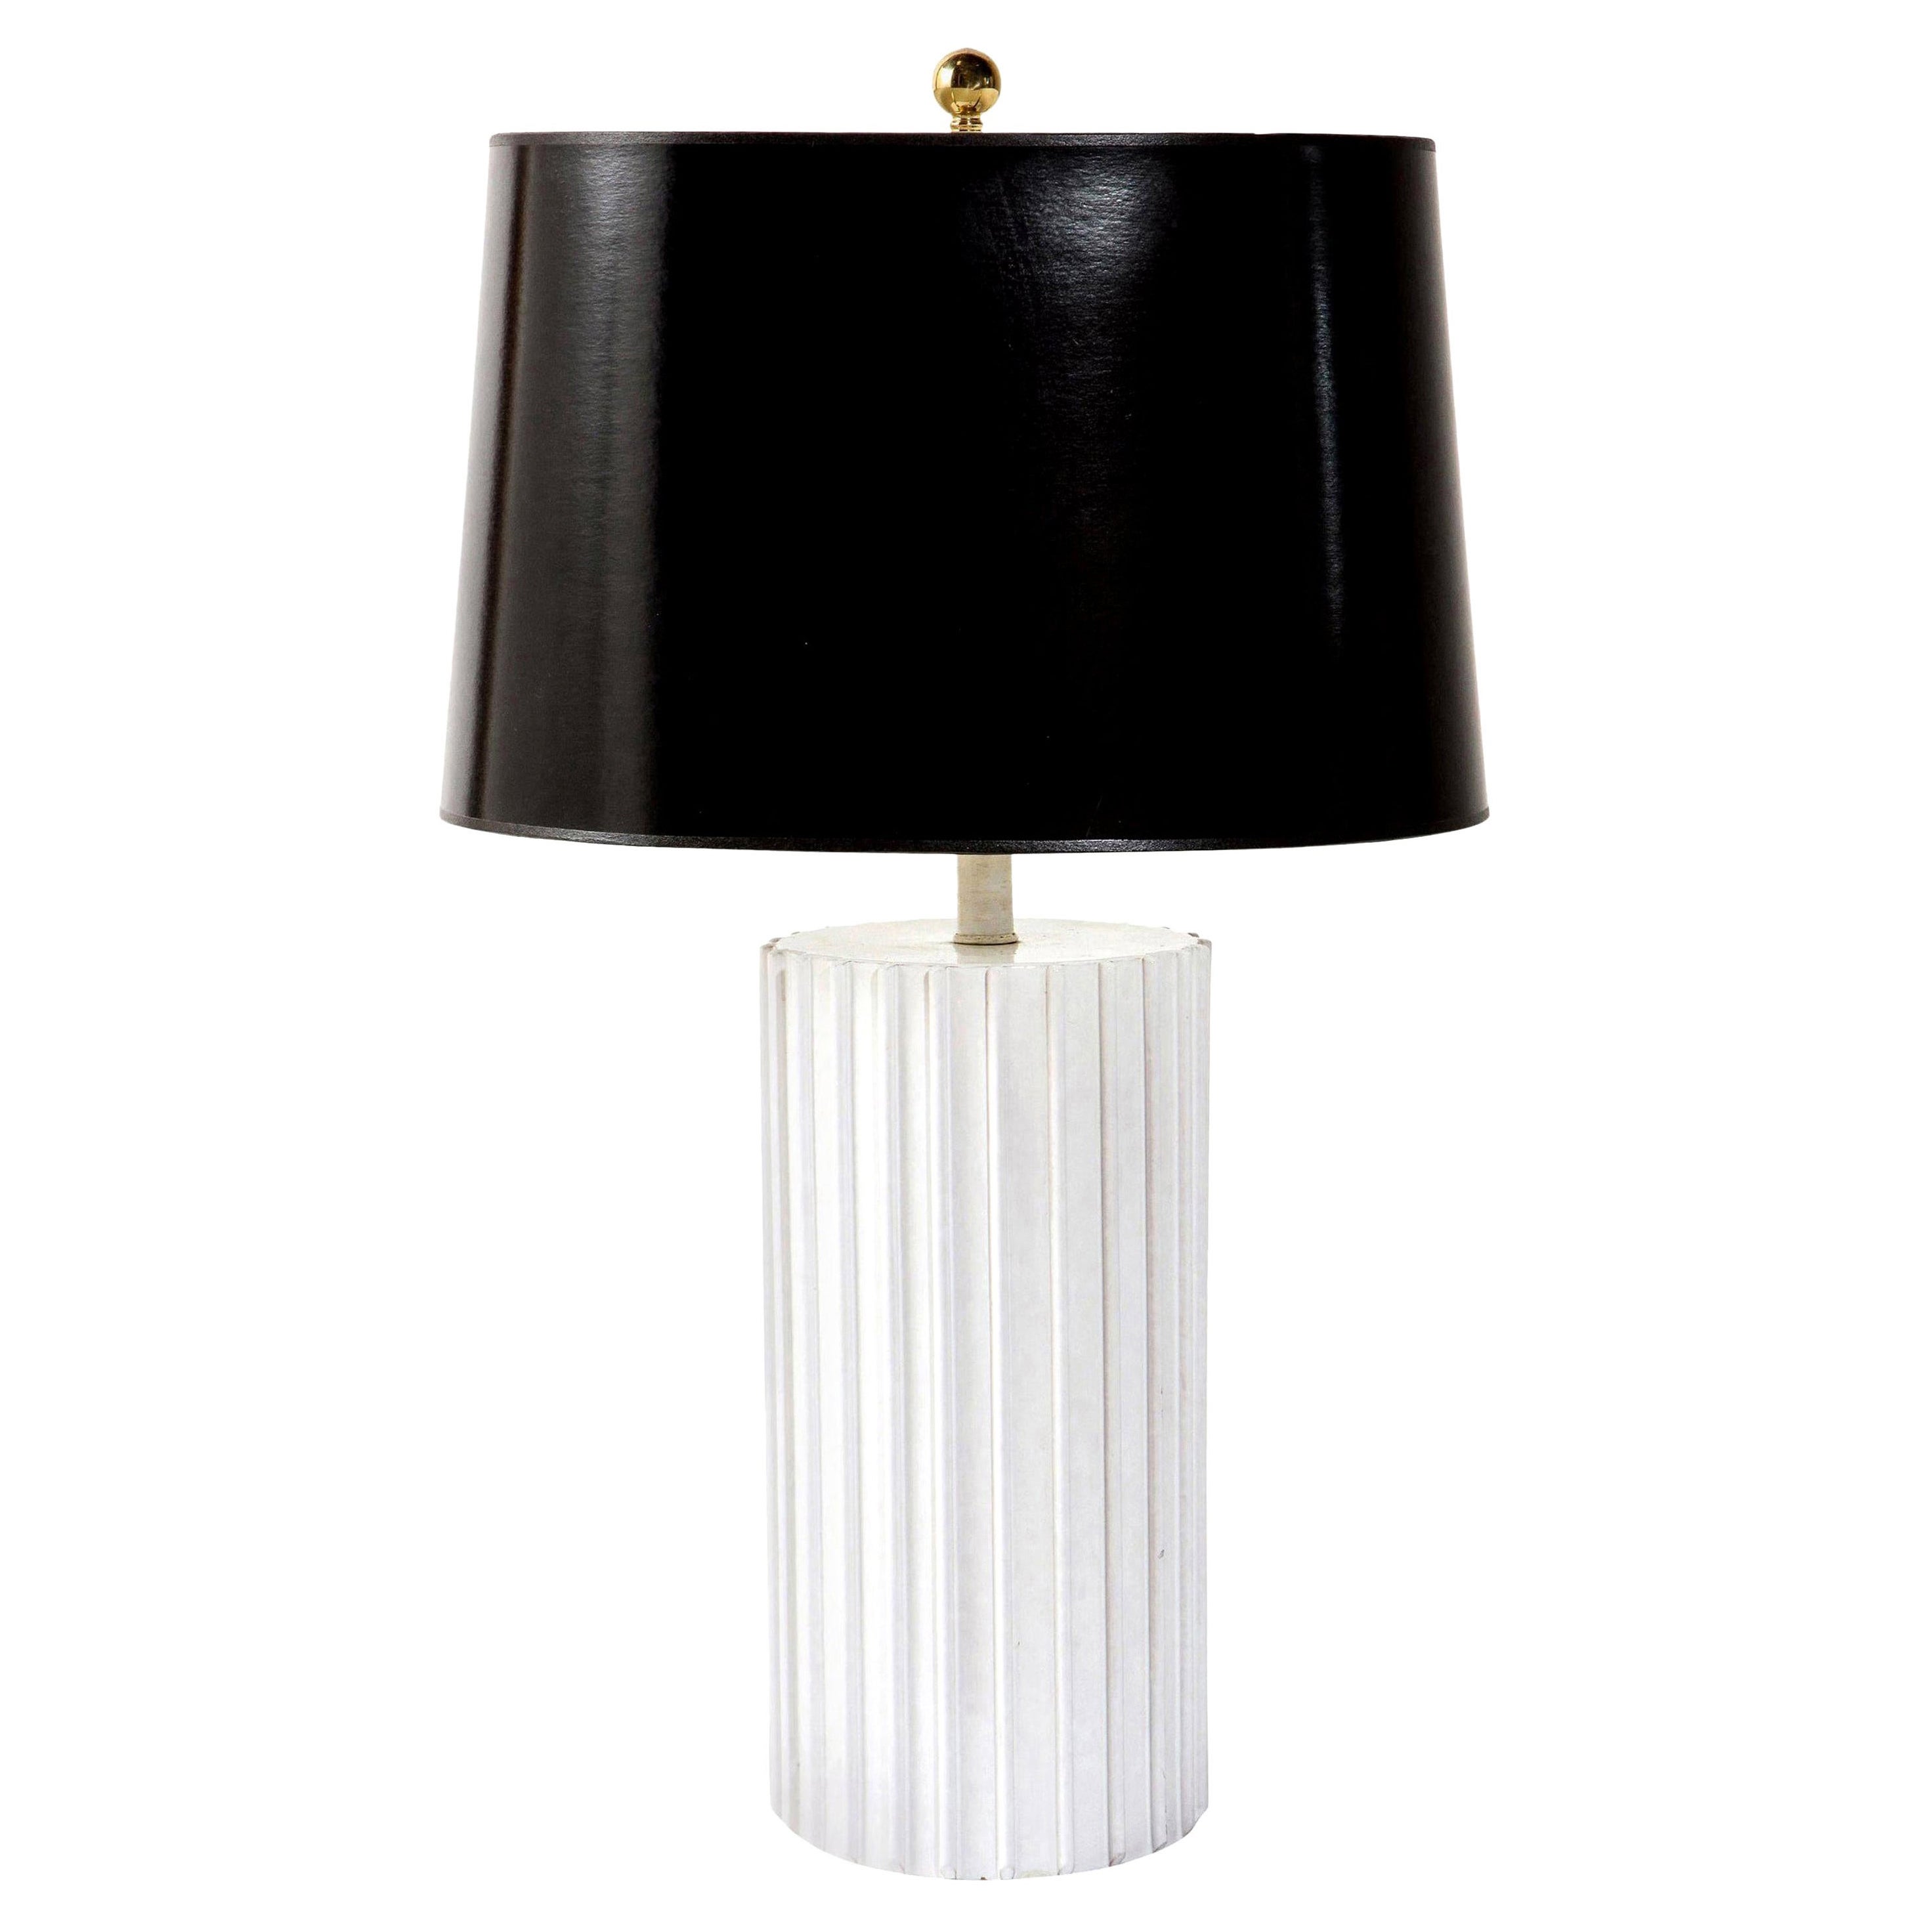 Tischlampe, Keramik, Weiß, Mitte des Jahrhunderts, hohe weiße Keramiklampe, C 1960, Lampe